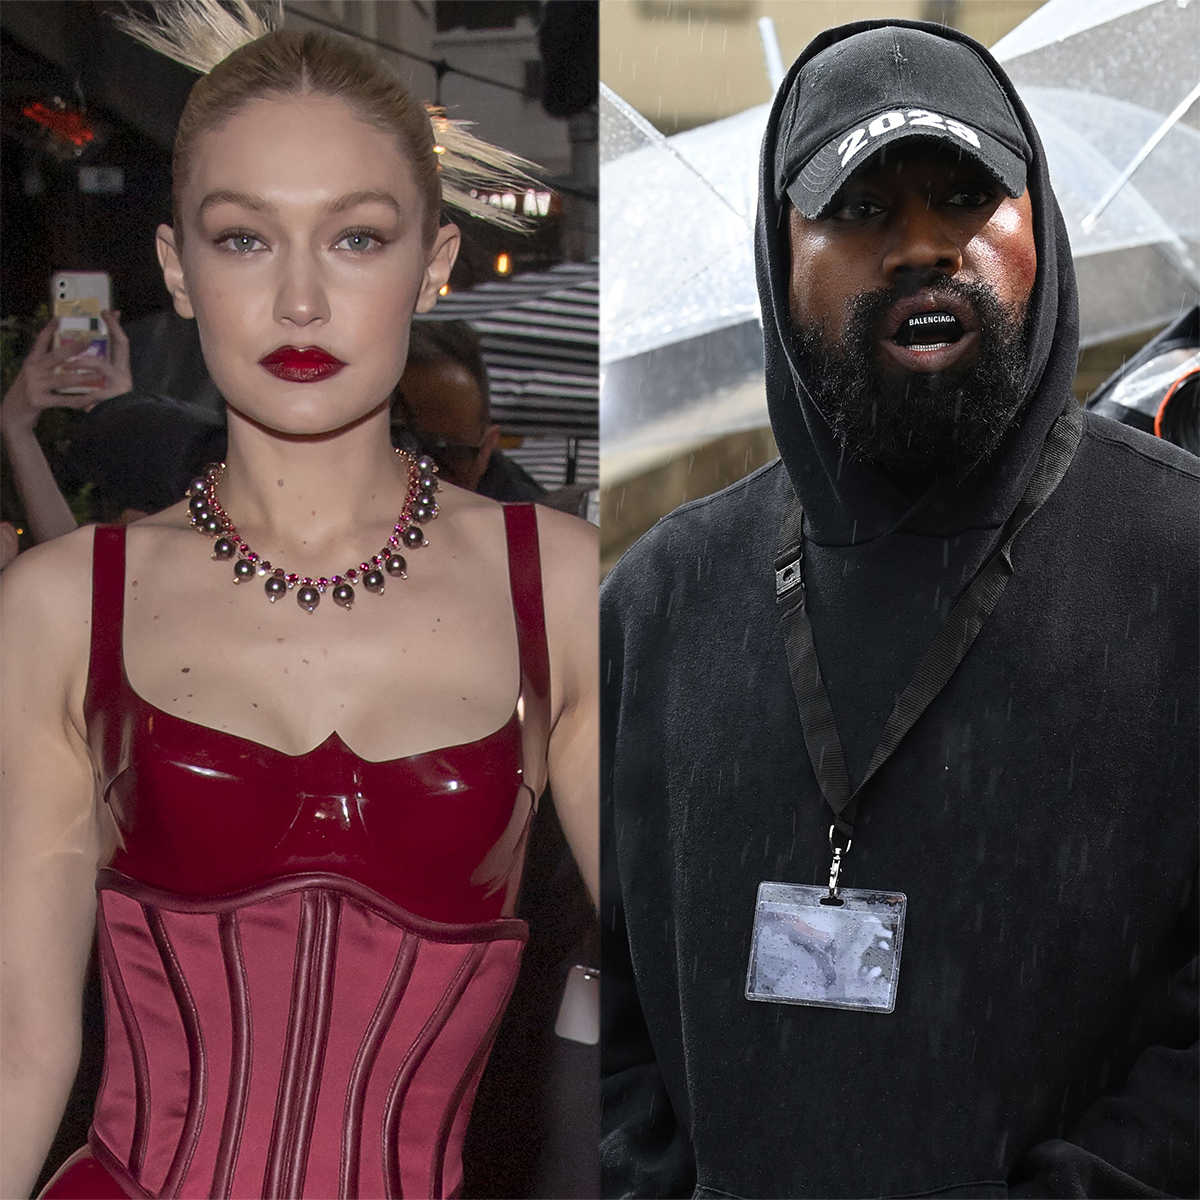 Why Gigi Hadid Is Calling “Bully” Kanye West a “Joke”